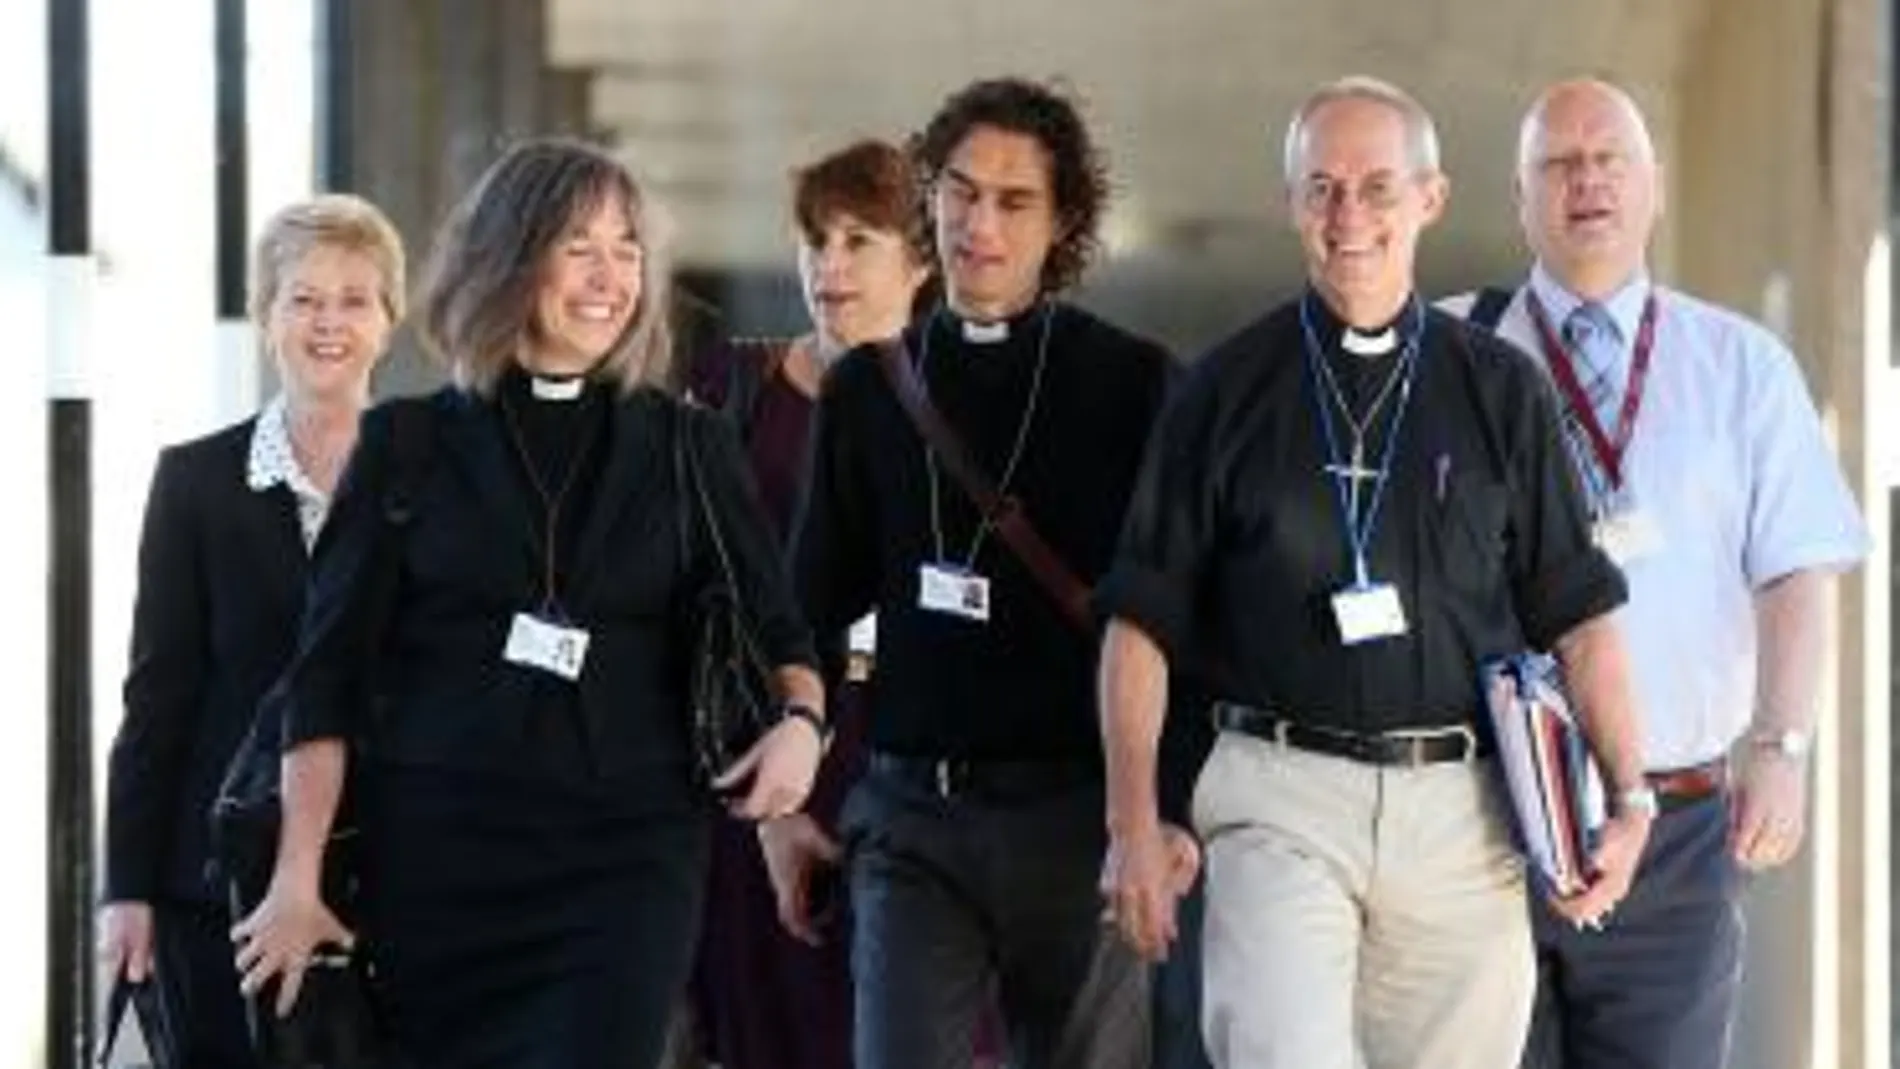 Imagen del obispo de Canterbury, acompañado por otros miembros del clero, de camino al sínodo que ha tomado la decisión